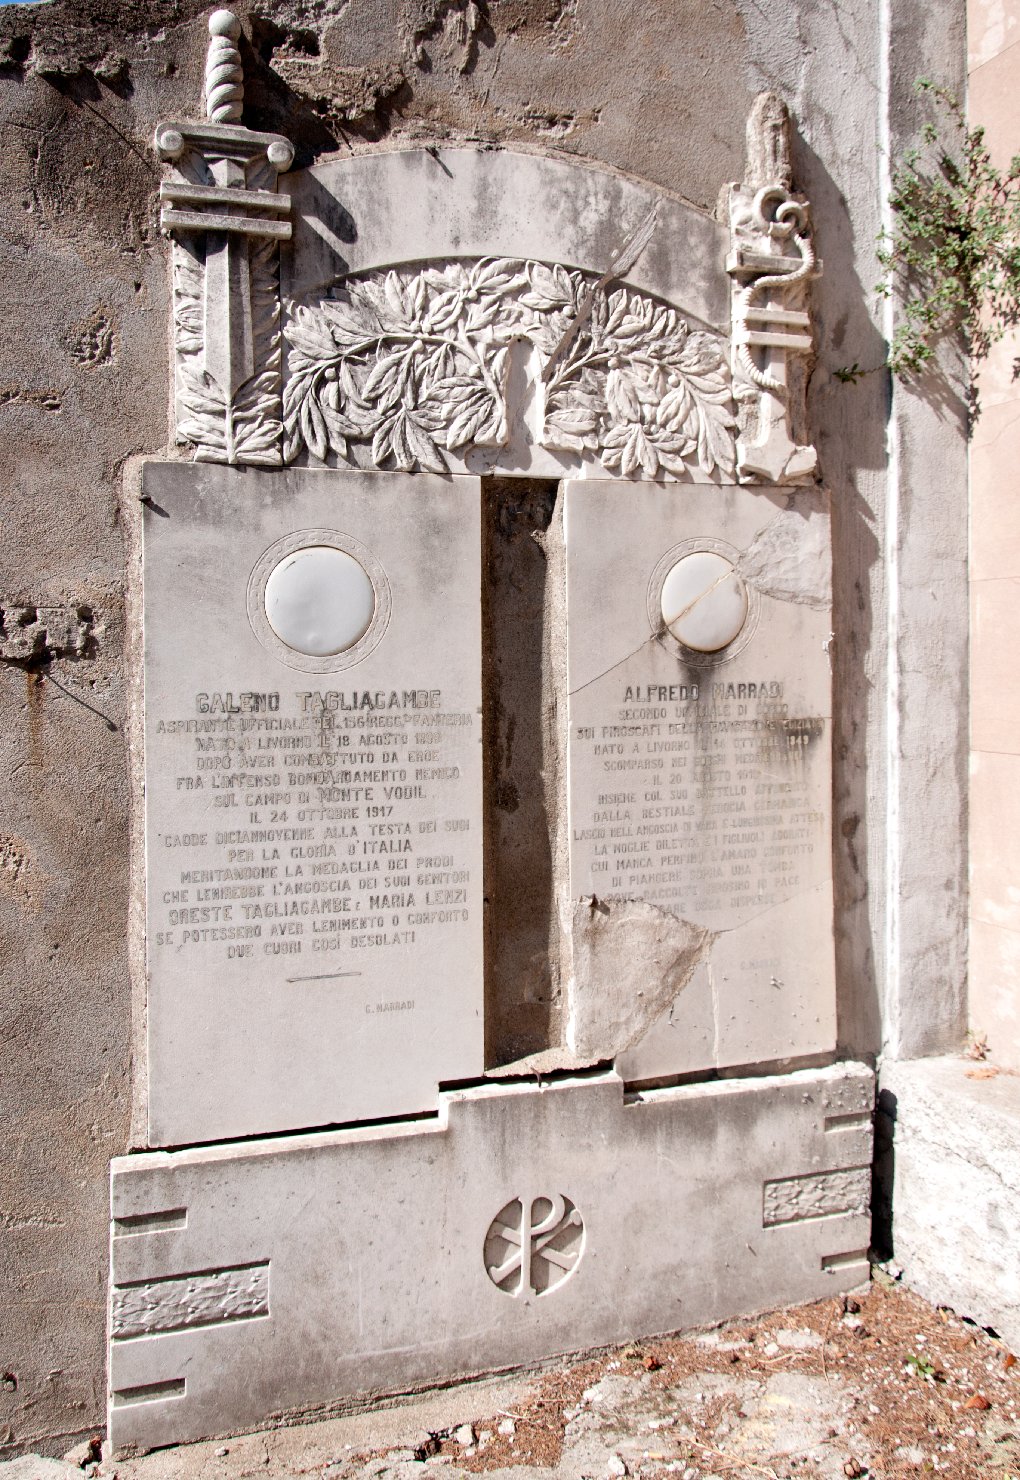 lapide commemorativa ai caduti - ambito toscano (sec. XX)